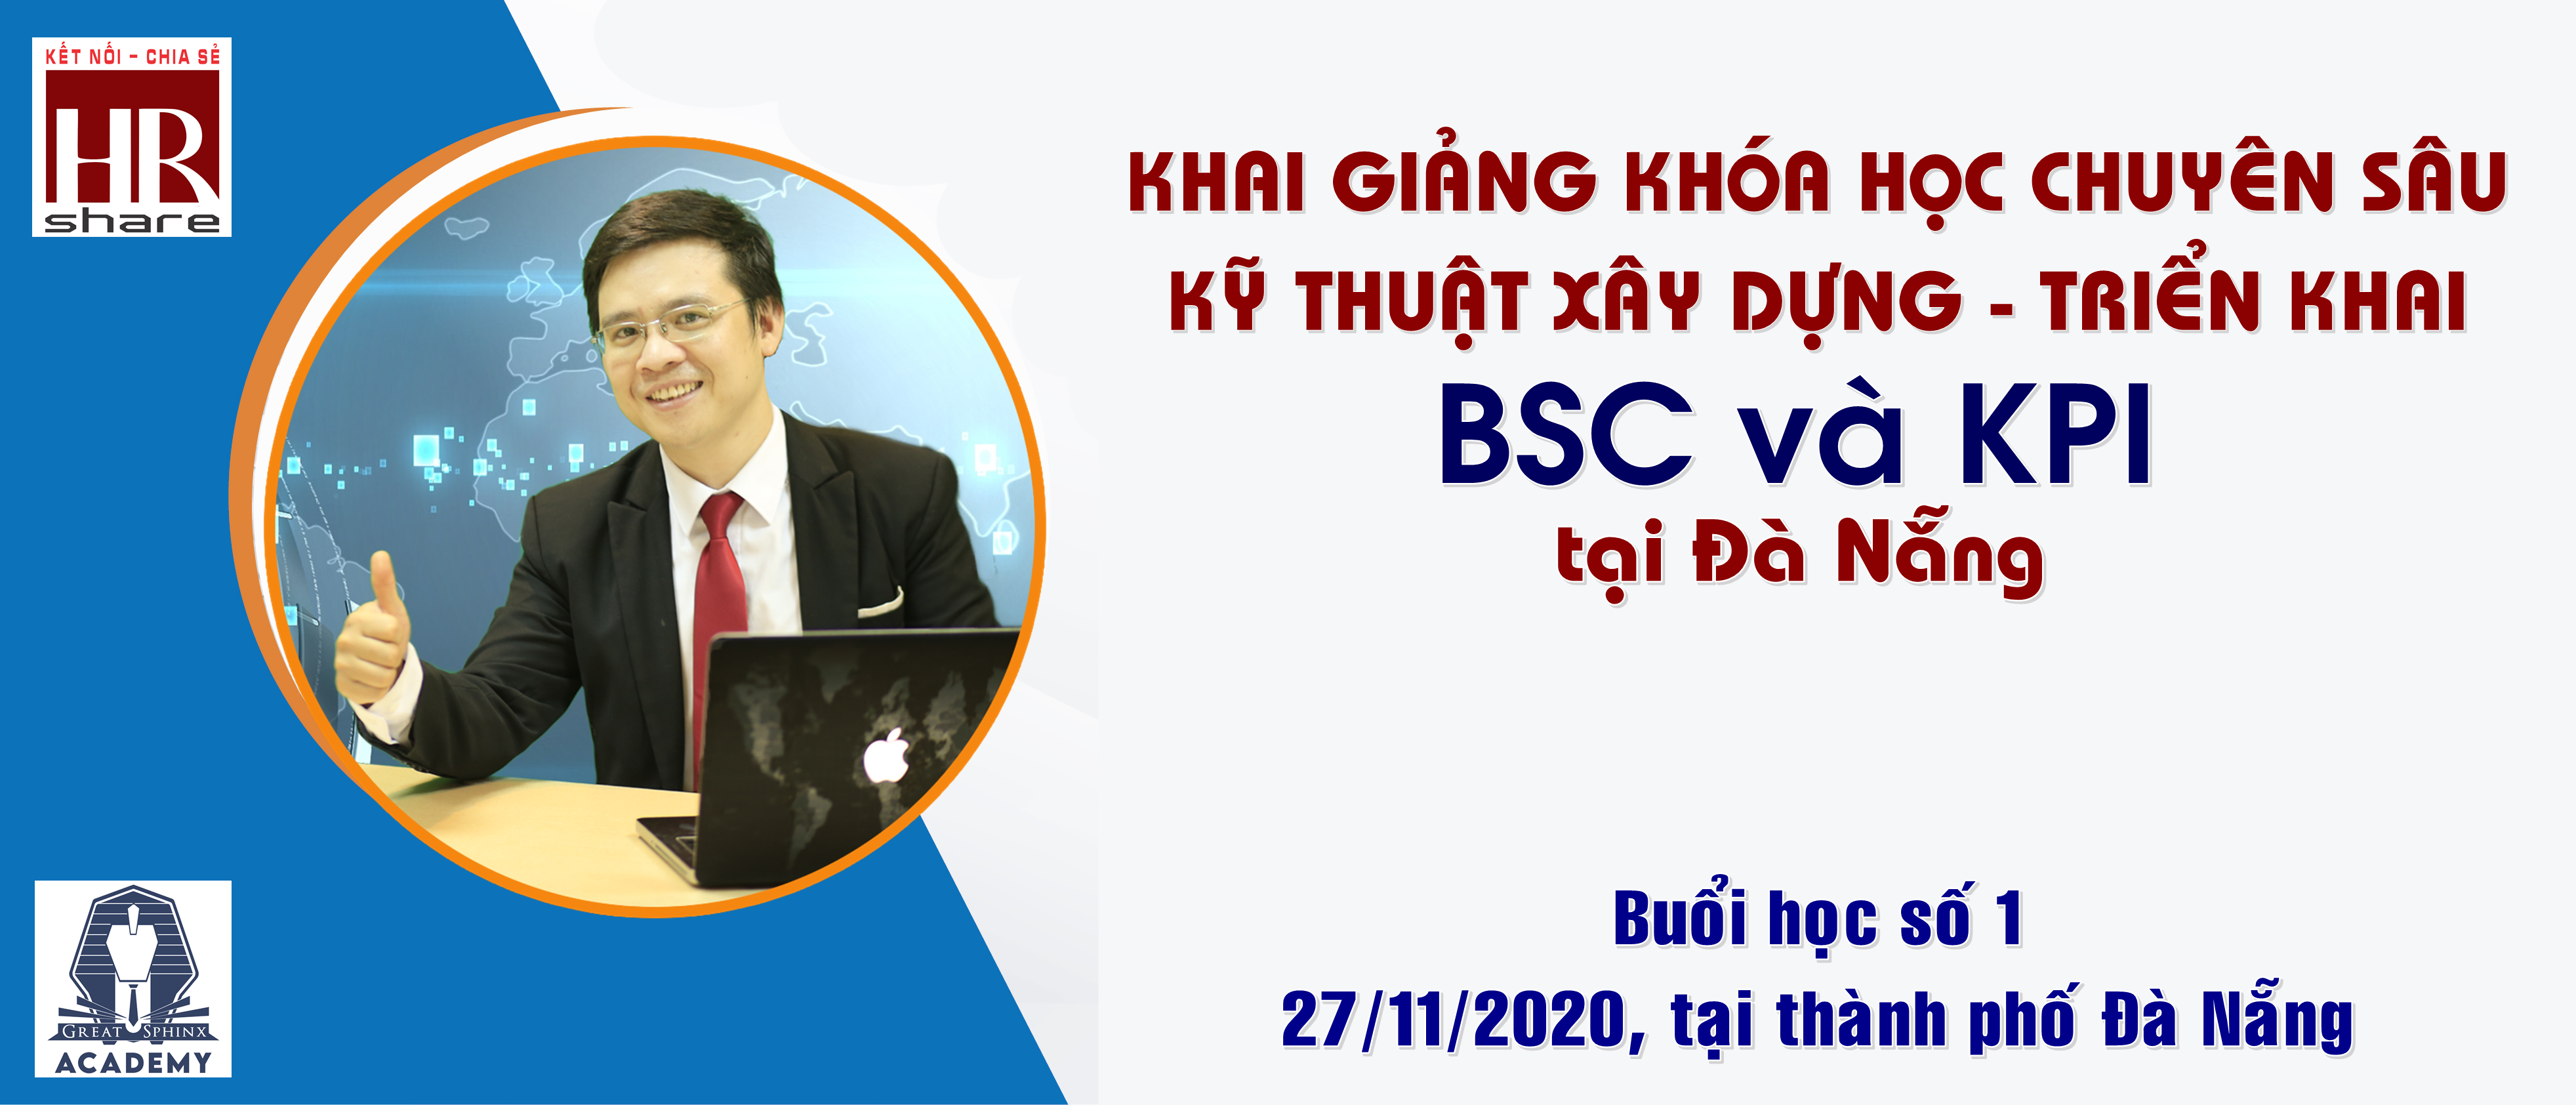 Khóa học Chuyên sâu chia sẻ kinh nghiệm “Triển khai xây dựng BSC vs KPI”, tại Đà Nẵng, vào 27/11/2020